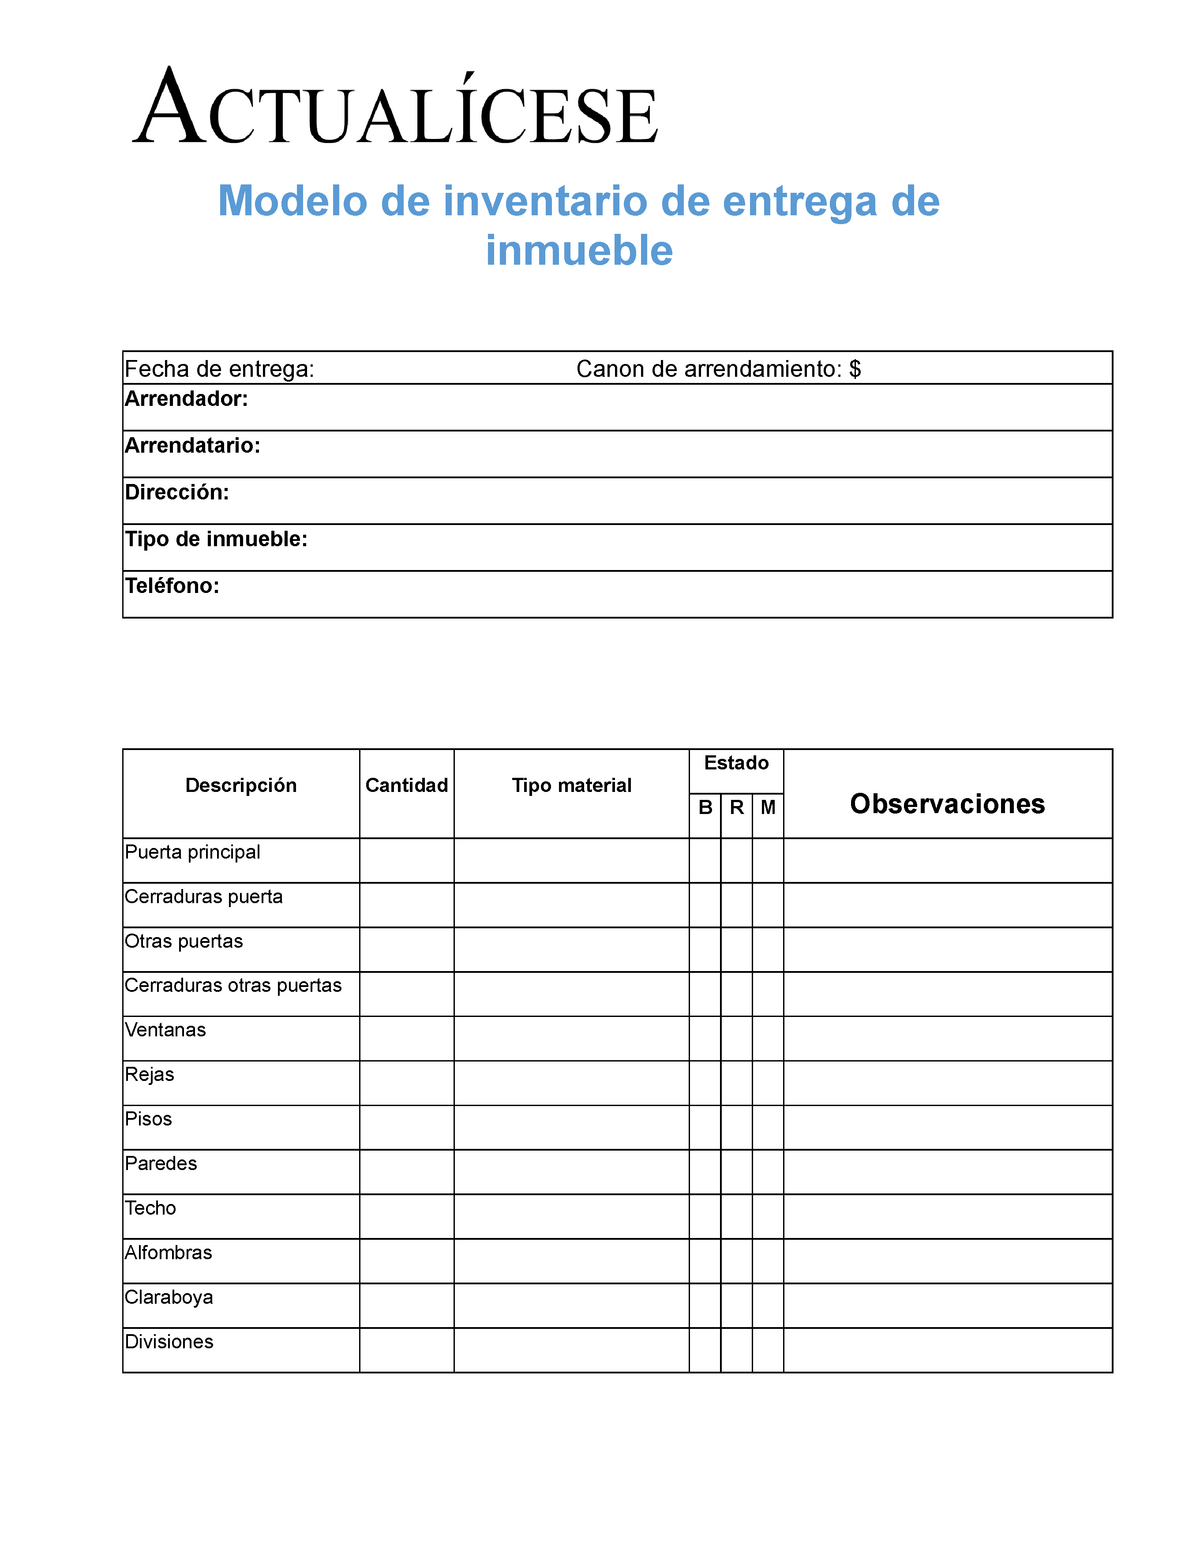 Modelo de inventario de entrega de inmueble - Modelo de inventario de  entrega de inmueble Fecha de - Studocu